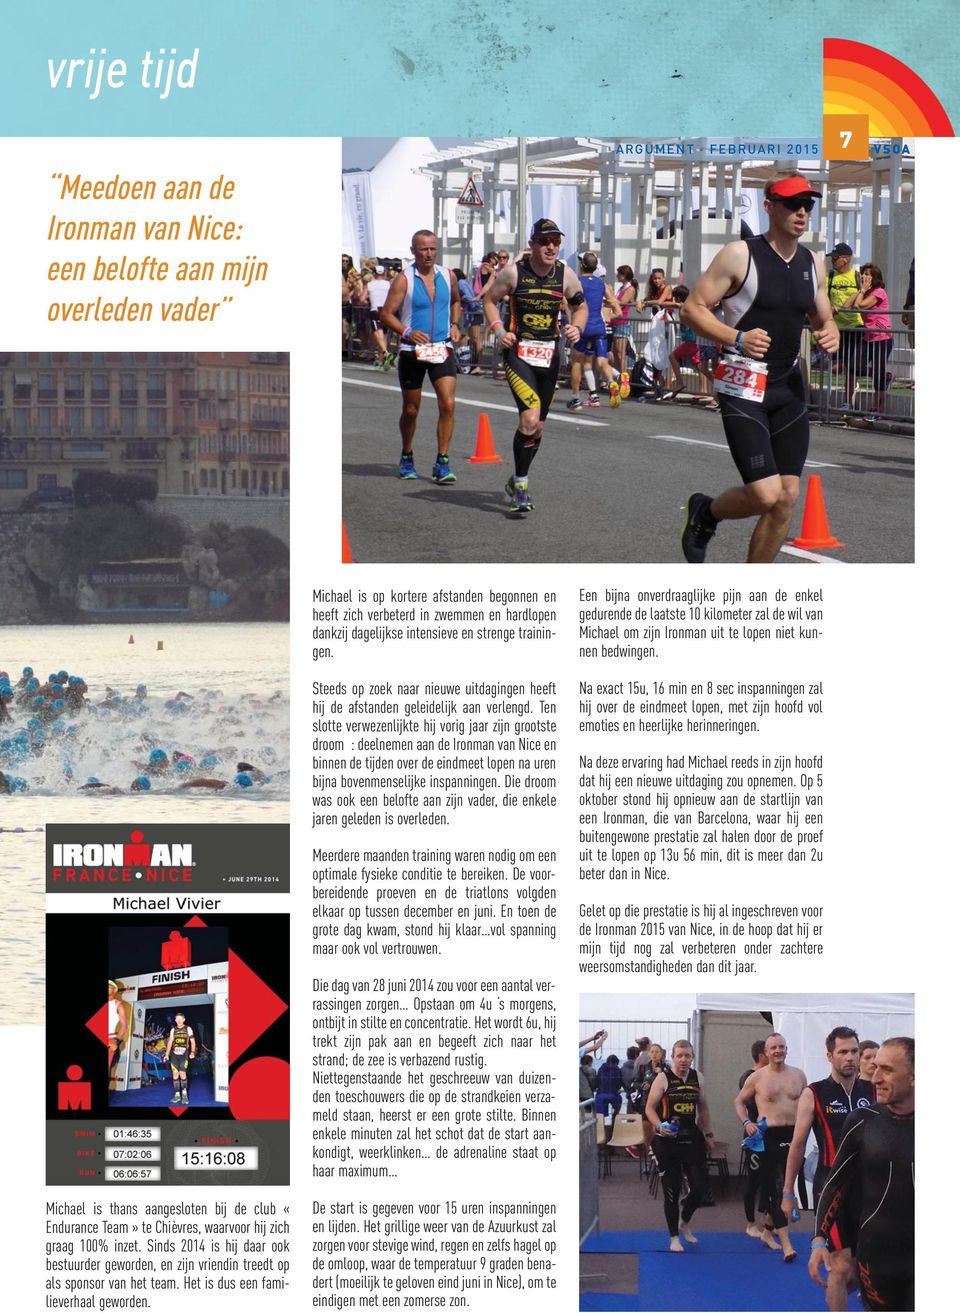 Ten slotte verwezenlijkte hij vorig jaar zijn grootste droom : deelnemen aan de Ironman van Nice en binnen de tijden over de eindmeet lopen na uren bijna bovenmenselijke inspanningen.